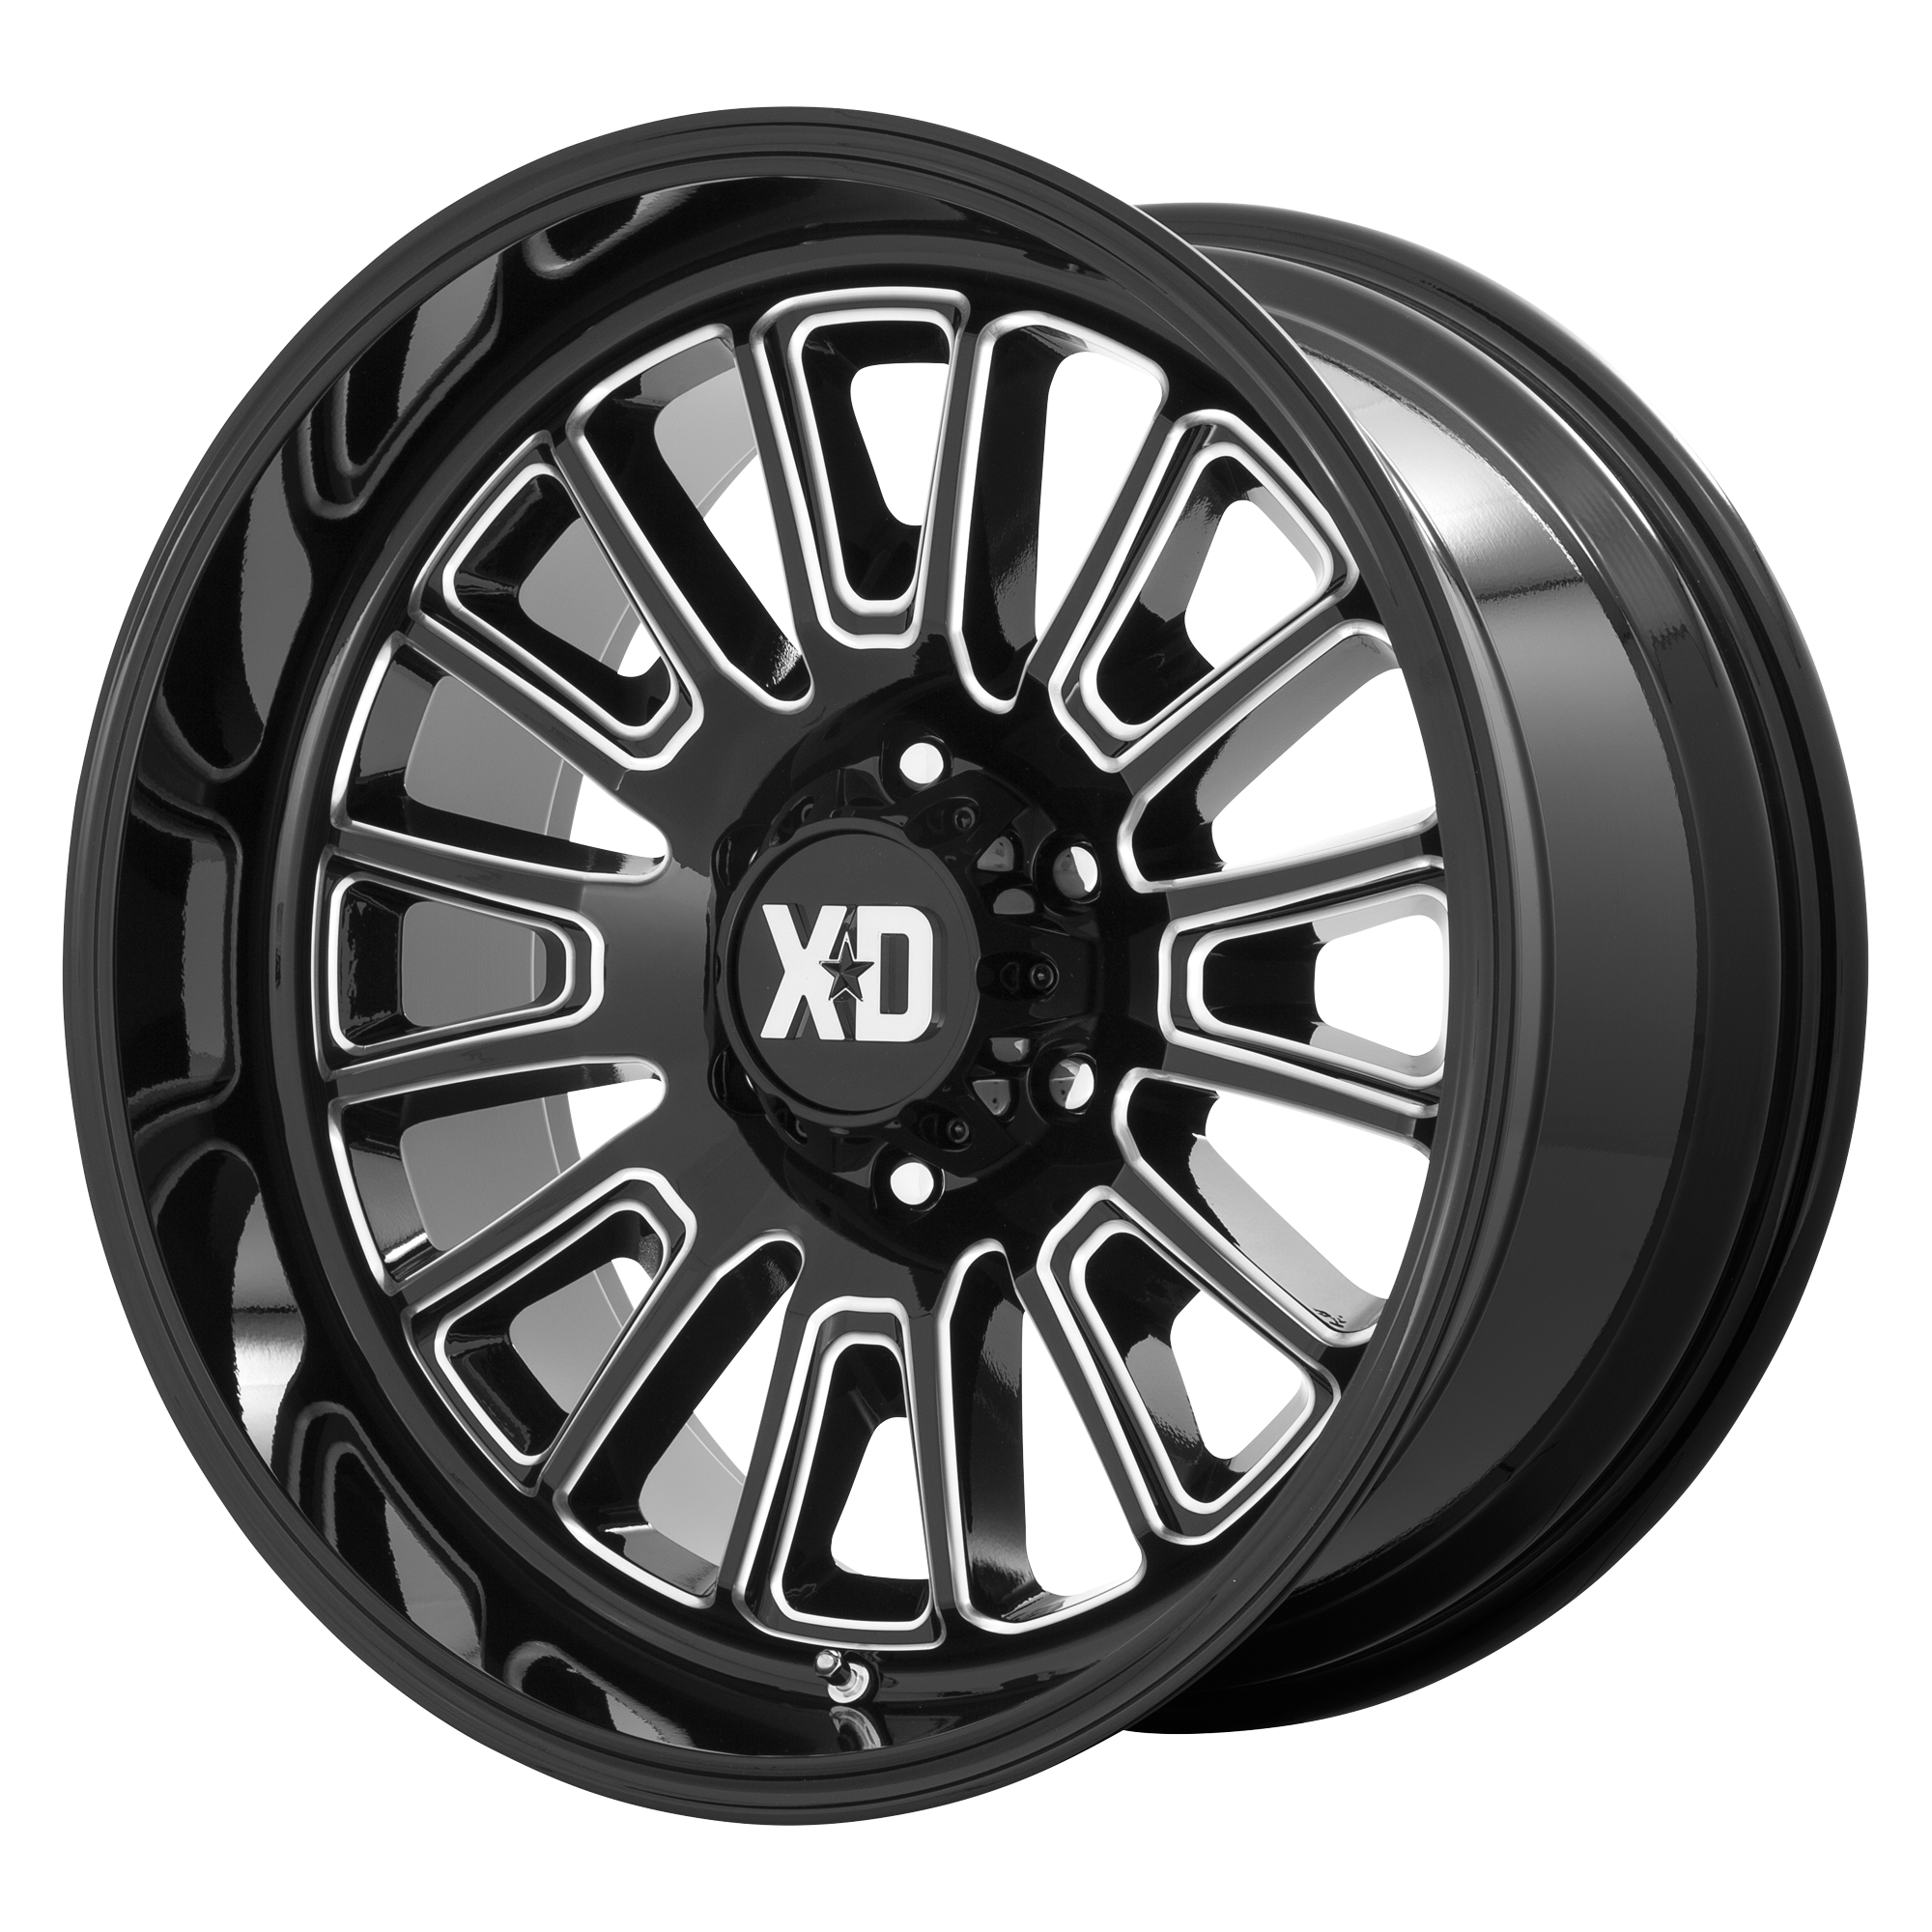 XD 20"x10" Non-Chrome Gloss Black Milled Custom Wheel ARSWCWXD86421088318N